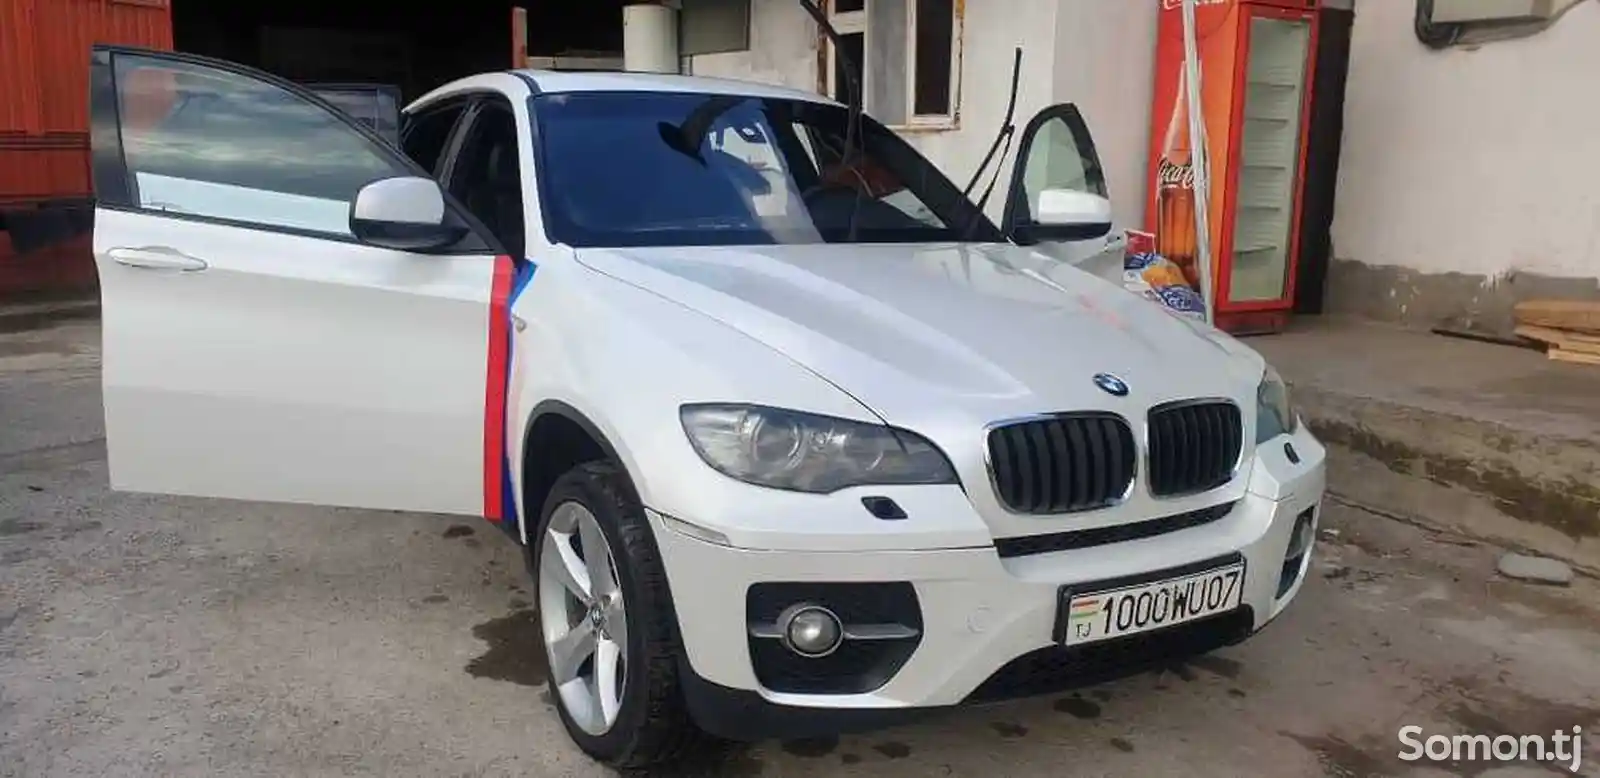 BMW X6, 2009-2